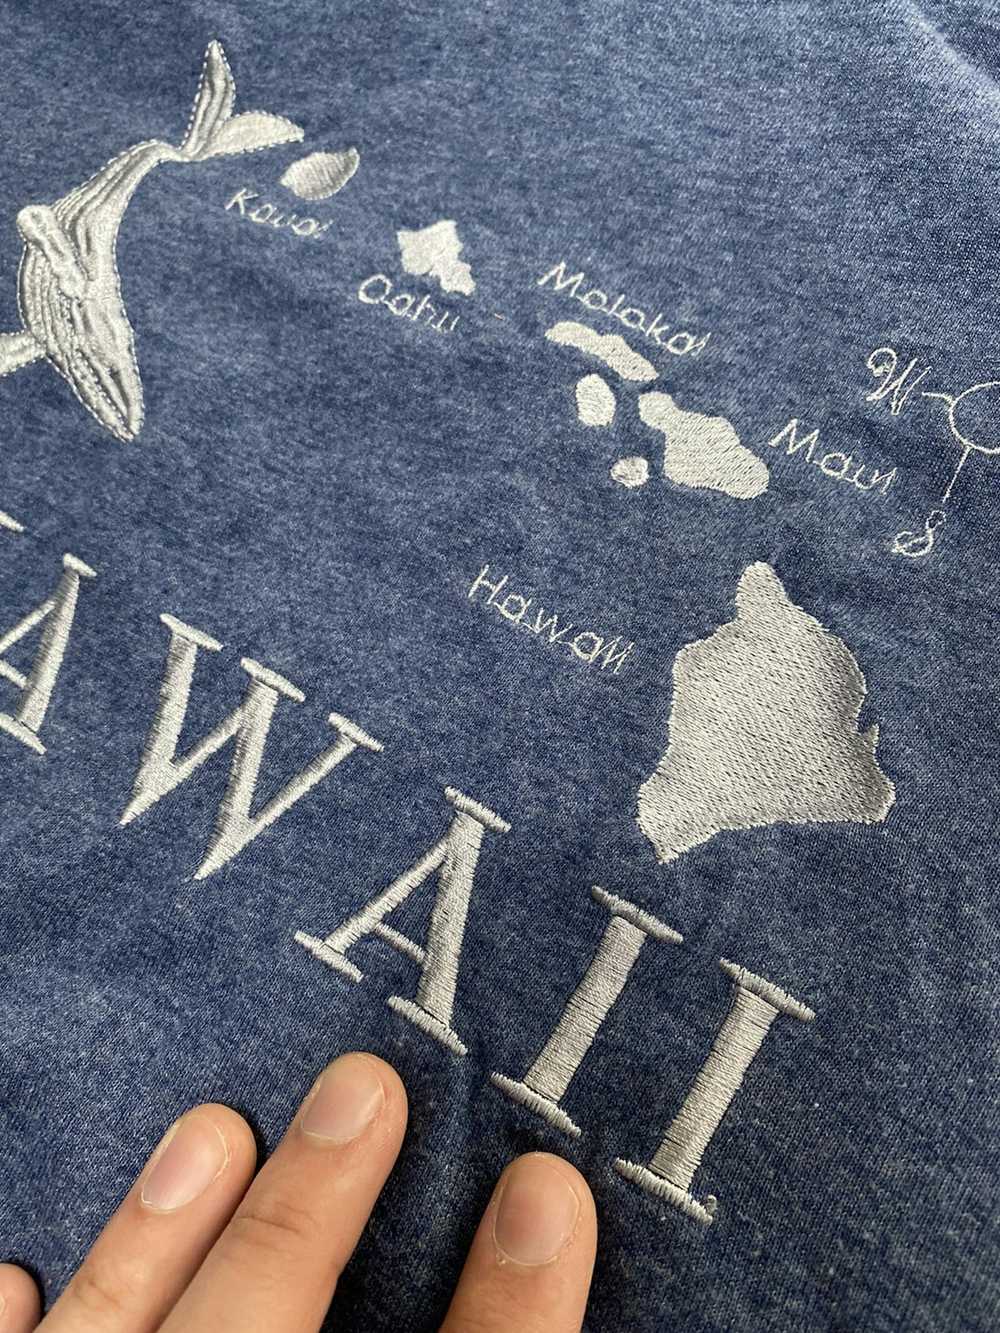 Hawaiian Shirt × Vintage hawaii embroidered tee s… - image 2